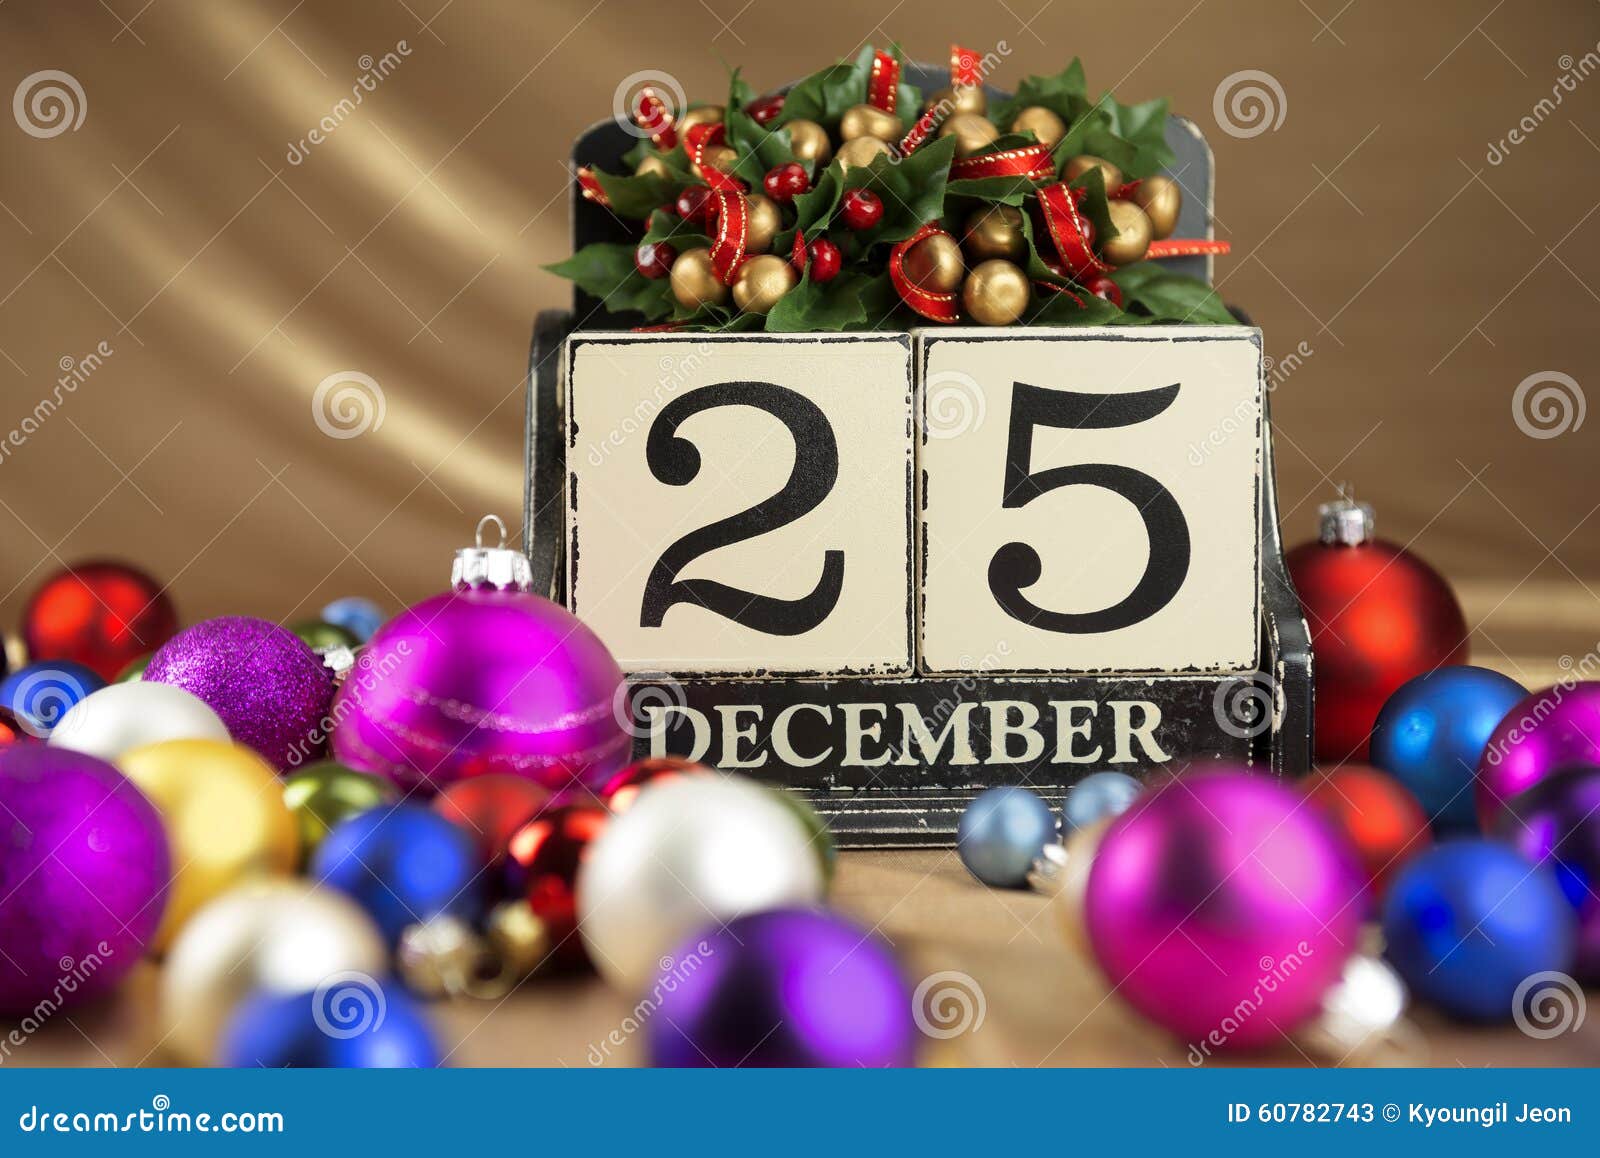 Calendario De La Navidad Con El 25 De Diciembre En Bloques De Madera Imagen  de archivo - Imagen de acebo, navidad: 60782743